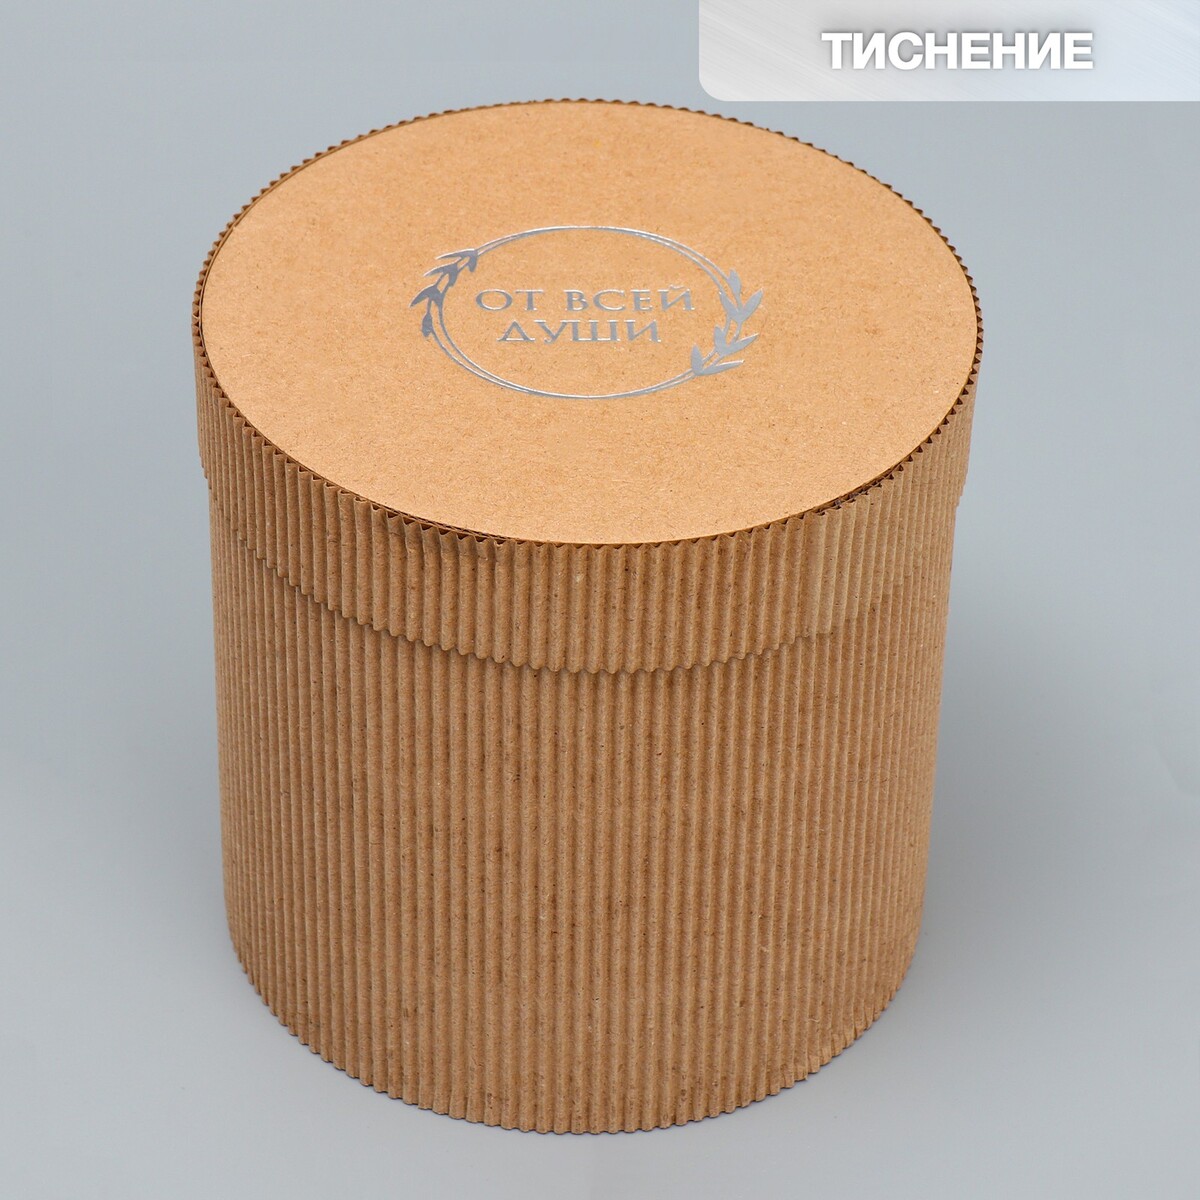 Коробка подарочная шляпная из микрогофры, упаковка, шляпная коробка крафт 10 х 10 см